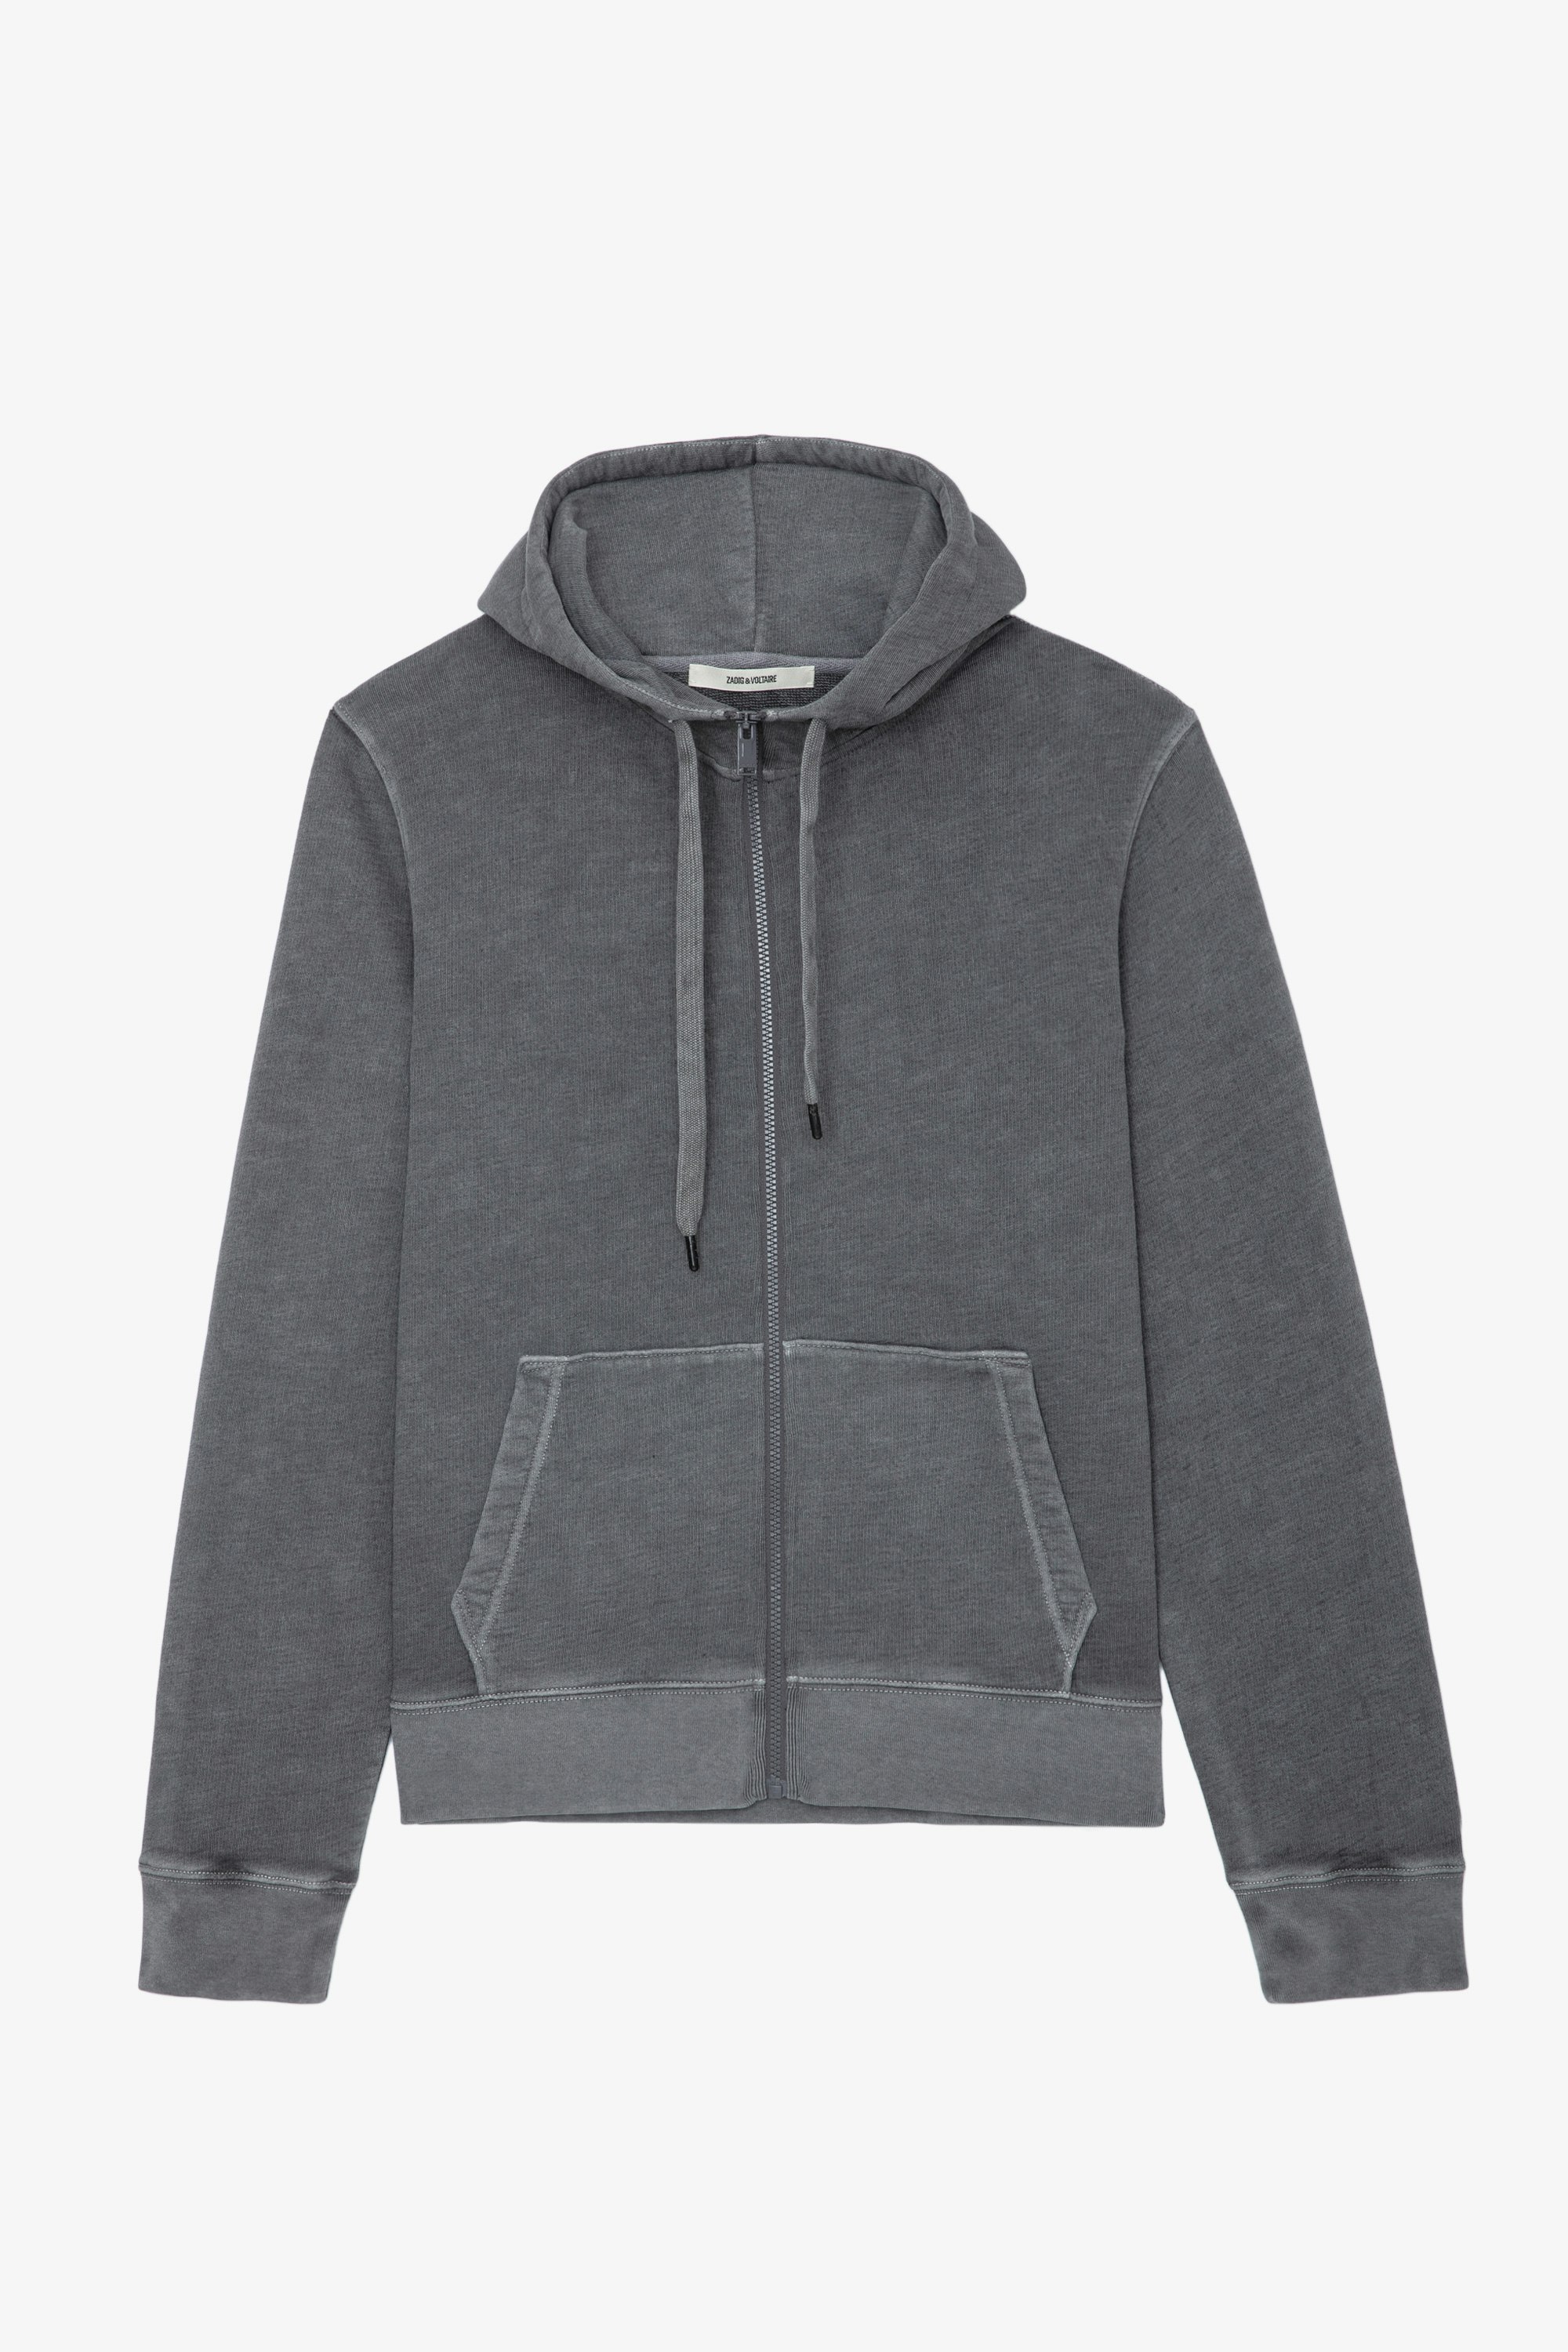 Sweatshirt Alex Skull - Sweatshirt molletonné zippé en coton gris à capuche, poches et patch Skull XO.